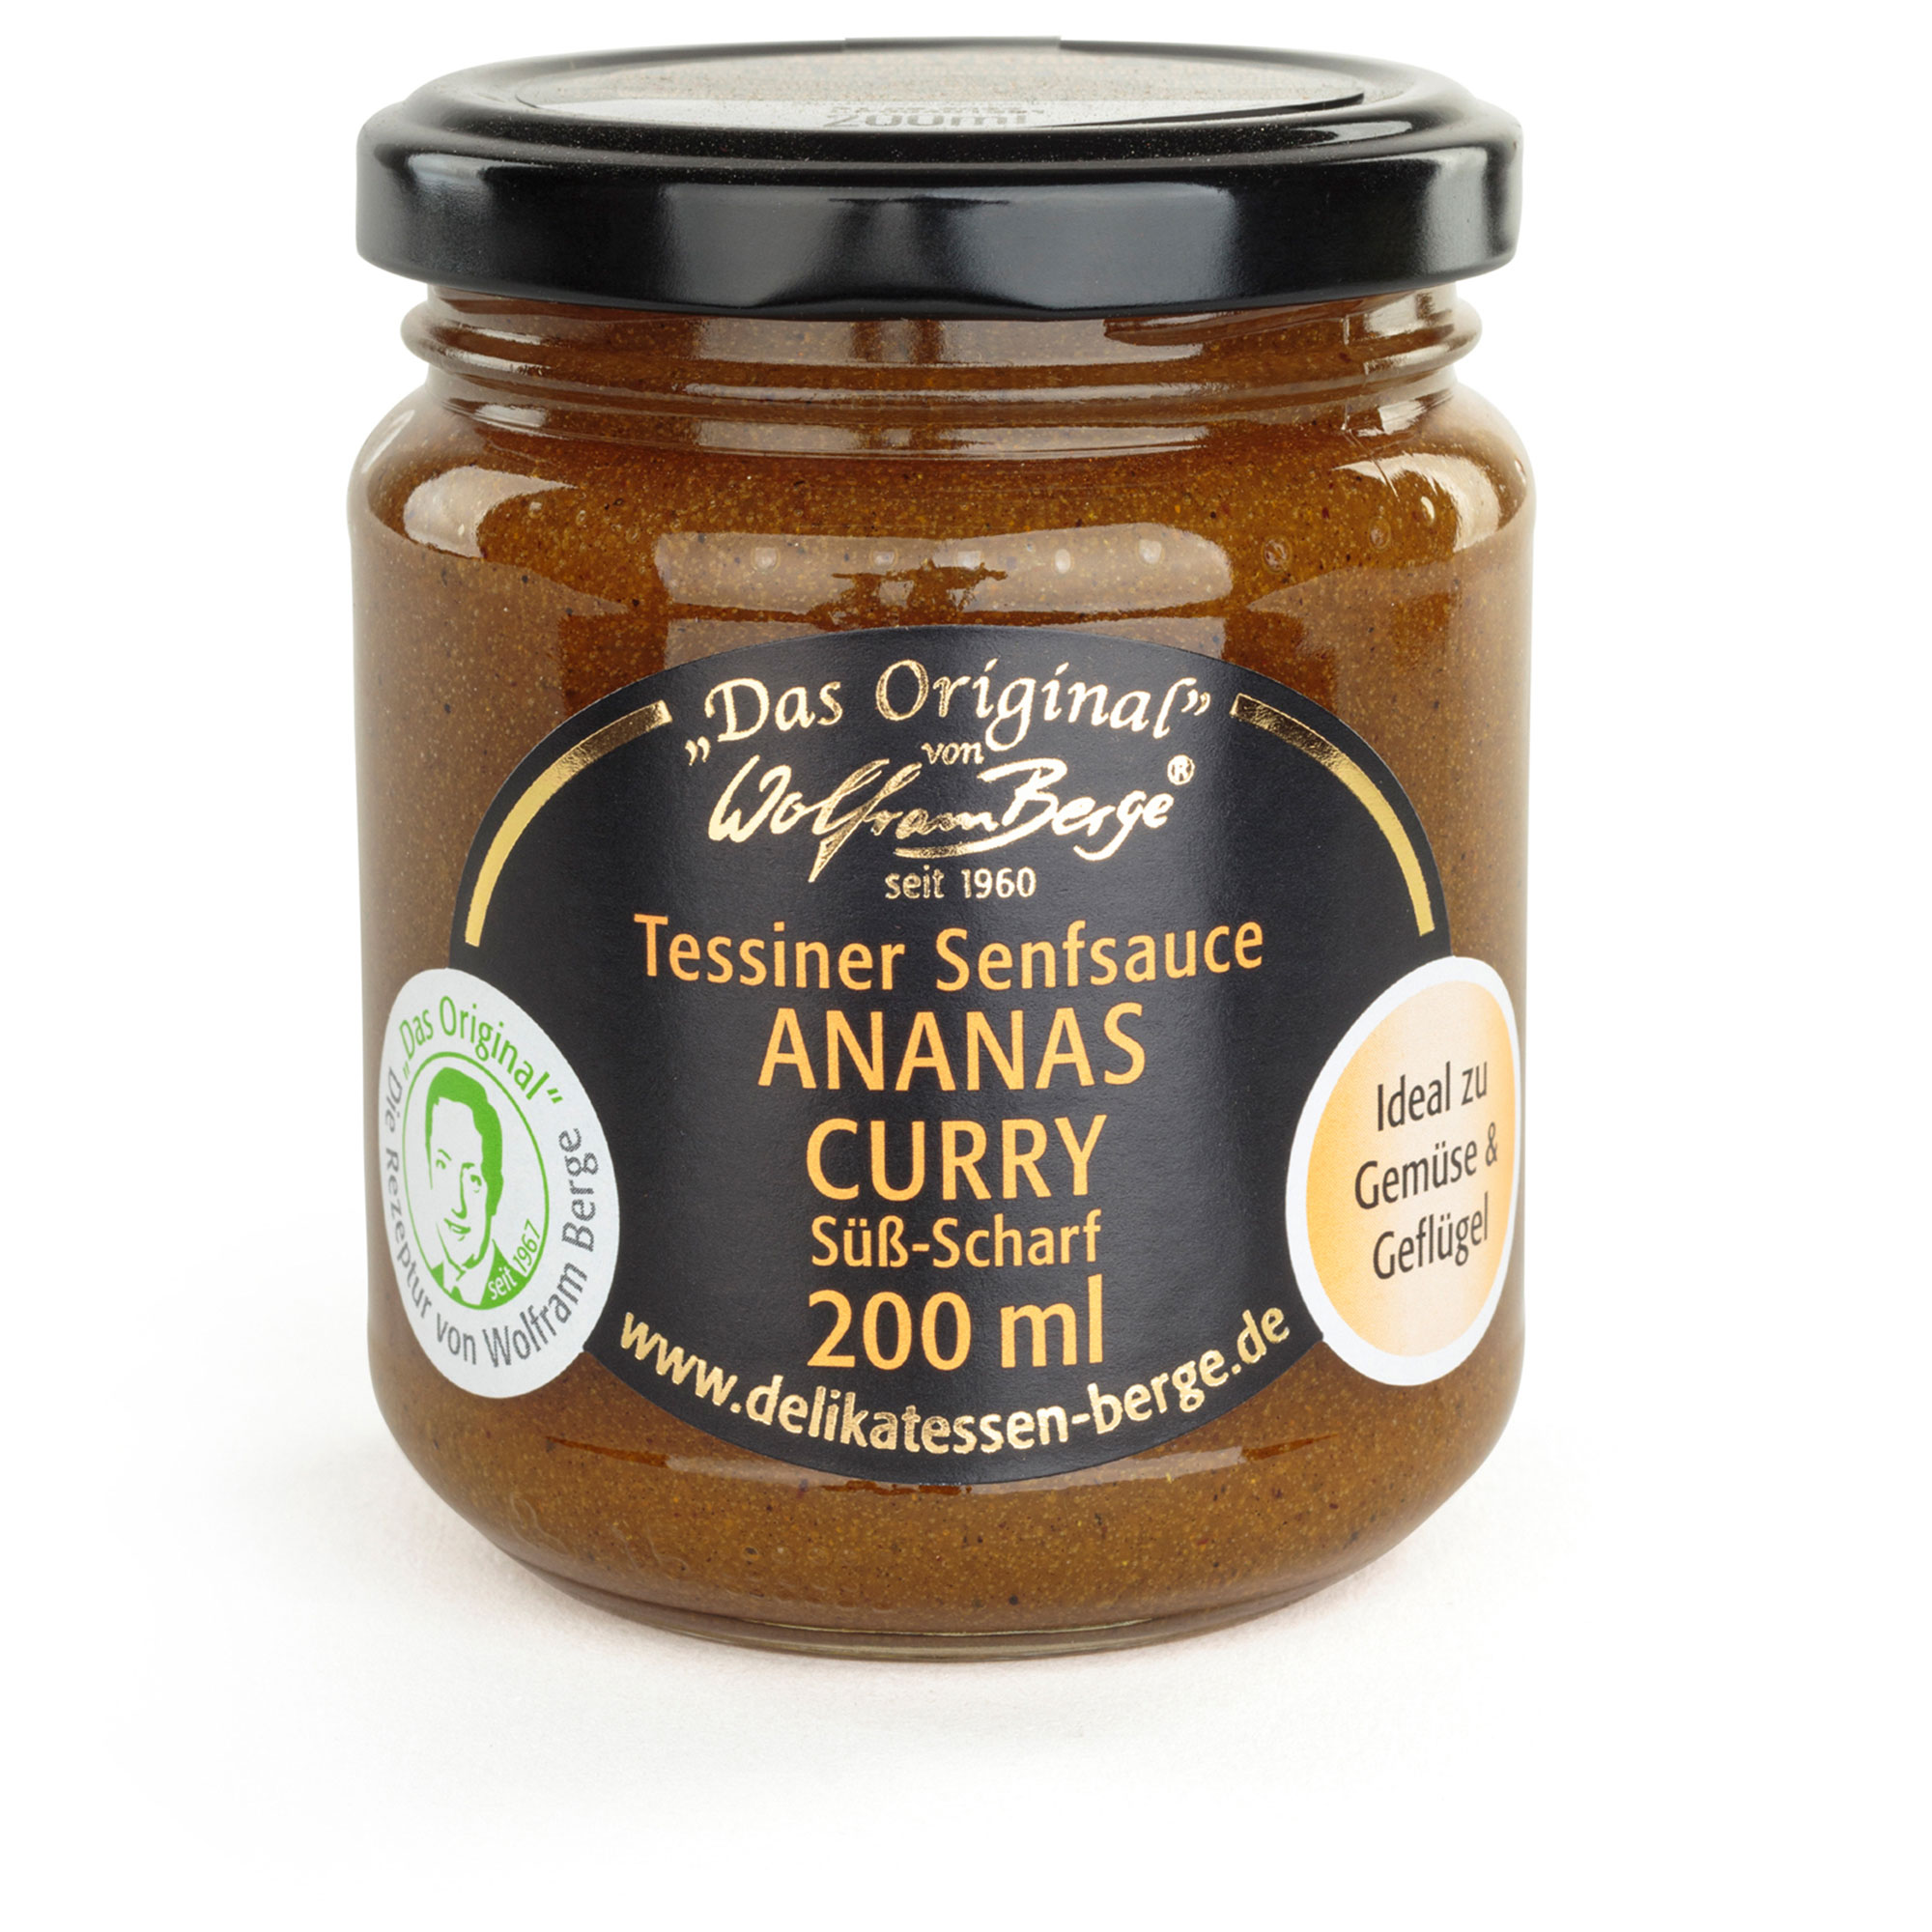 Original Tessiner Senfsauce Ananas Curry